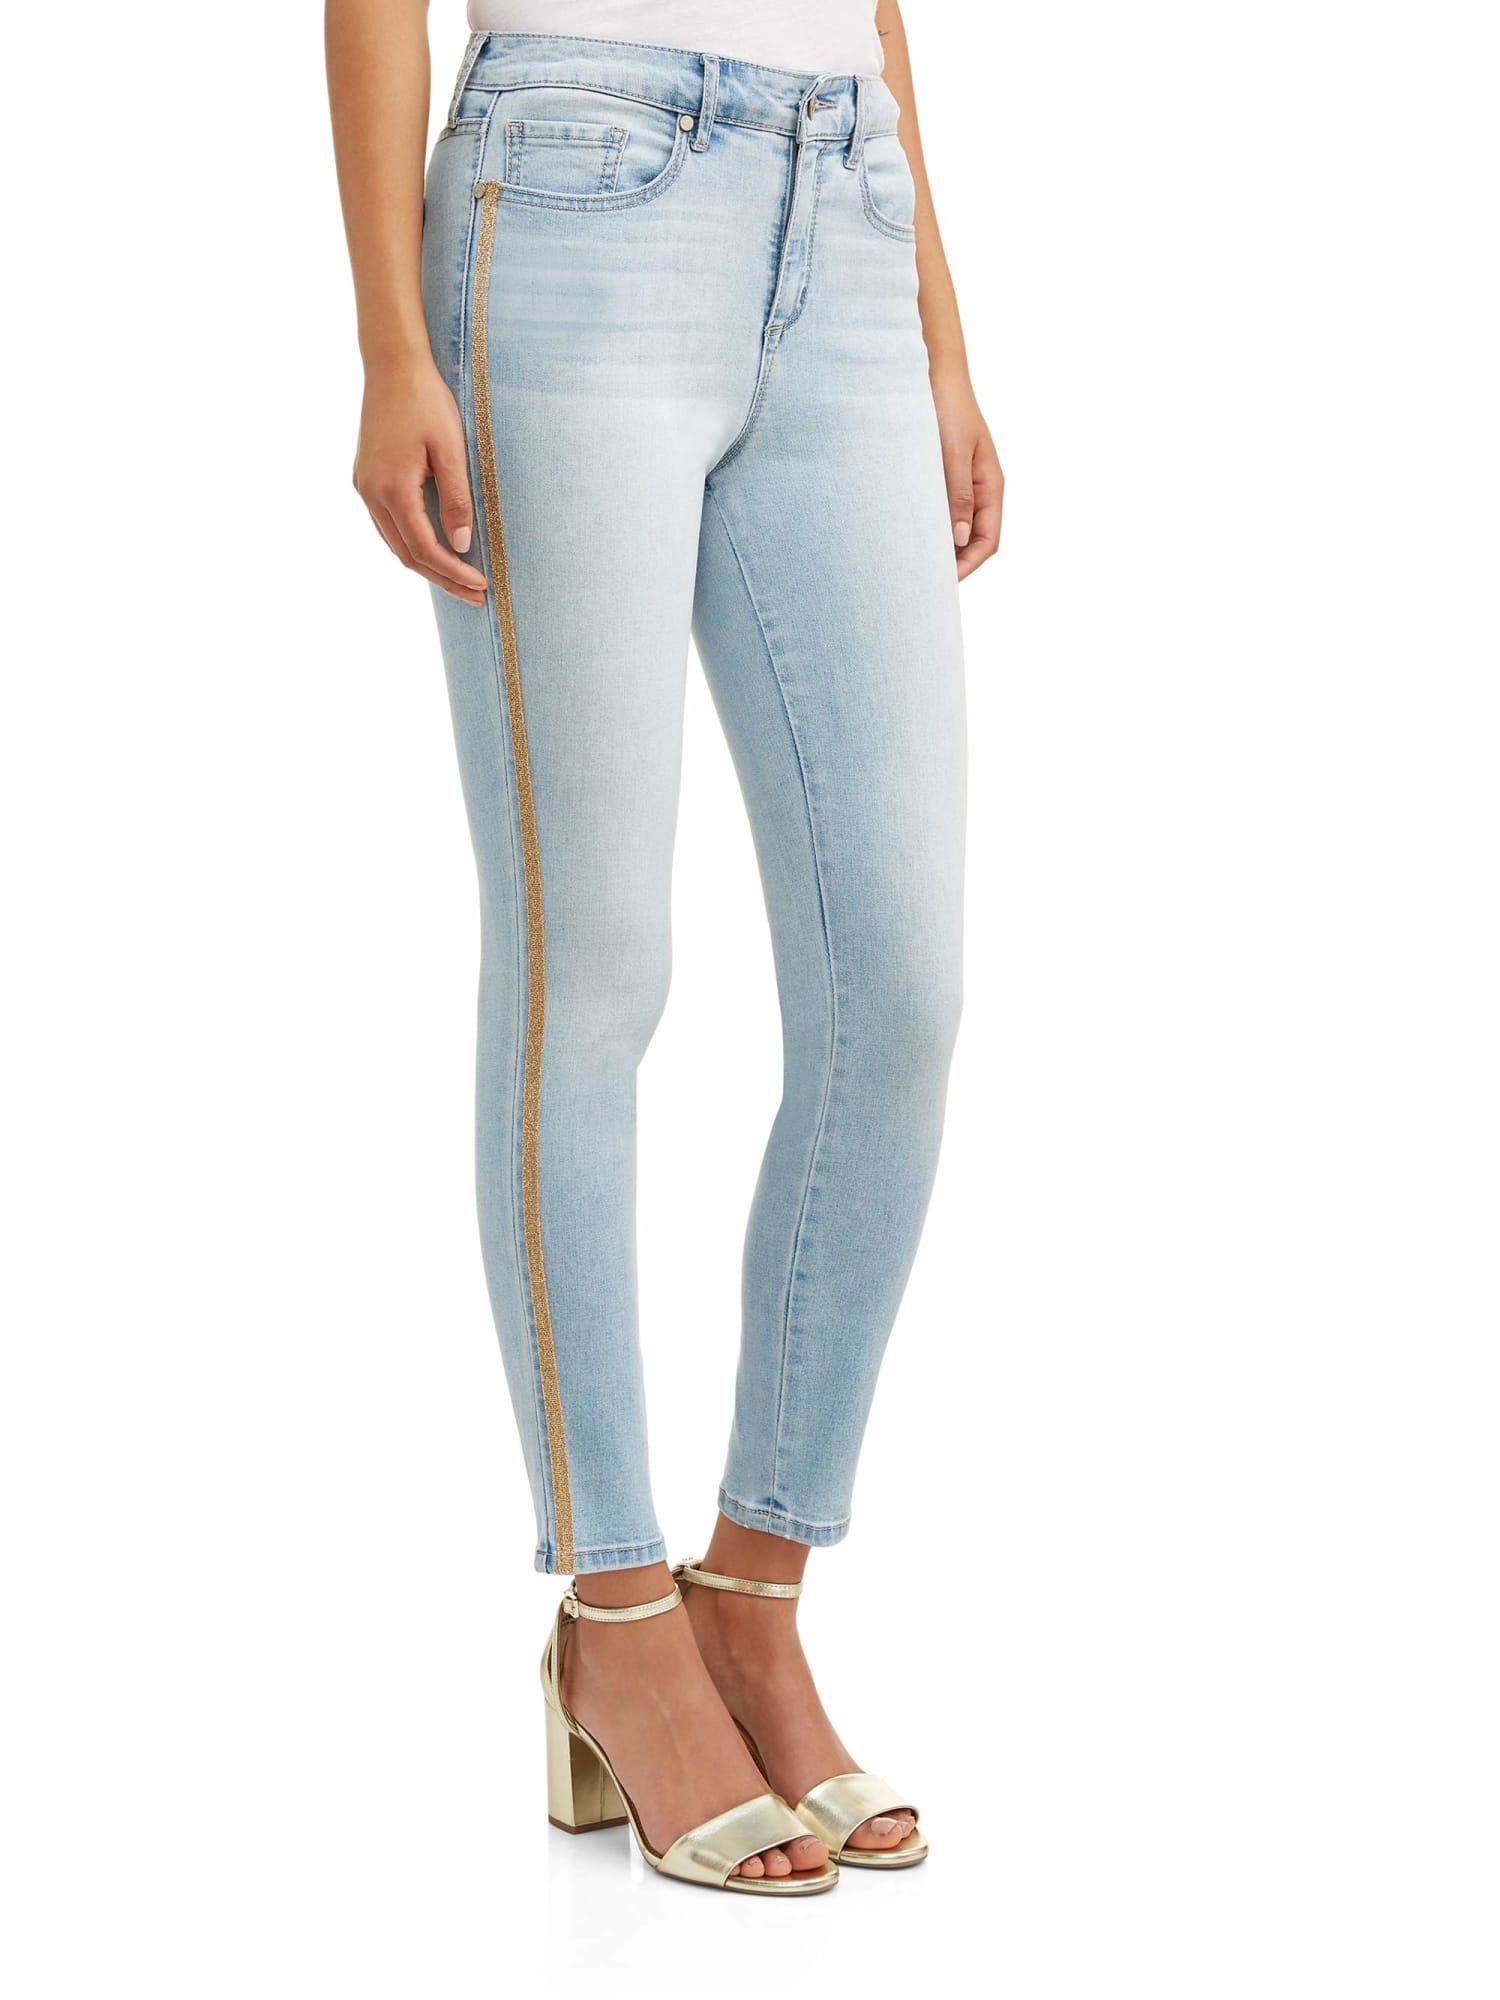 Sofia Vergara Jeans Womens Size 8 Regular Fit Tapered Fit Faded Dark Wash  Denim